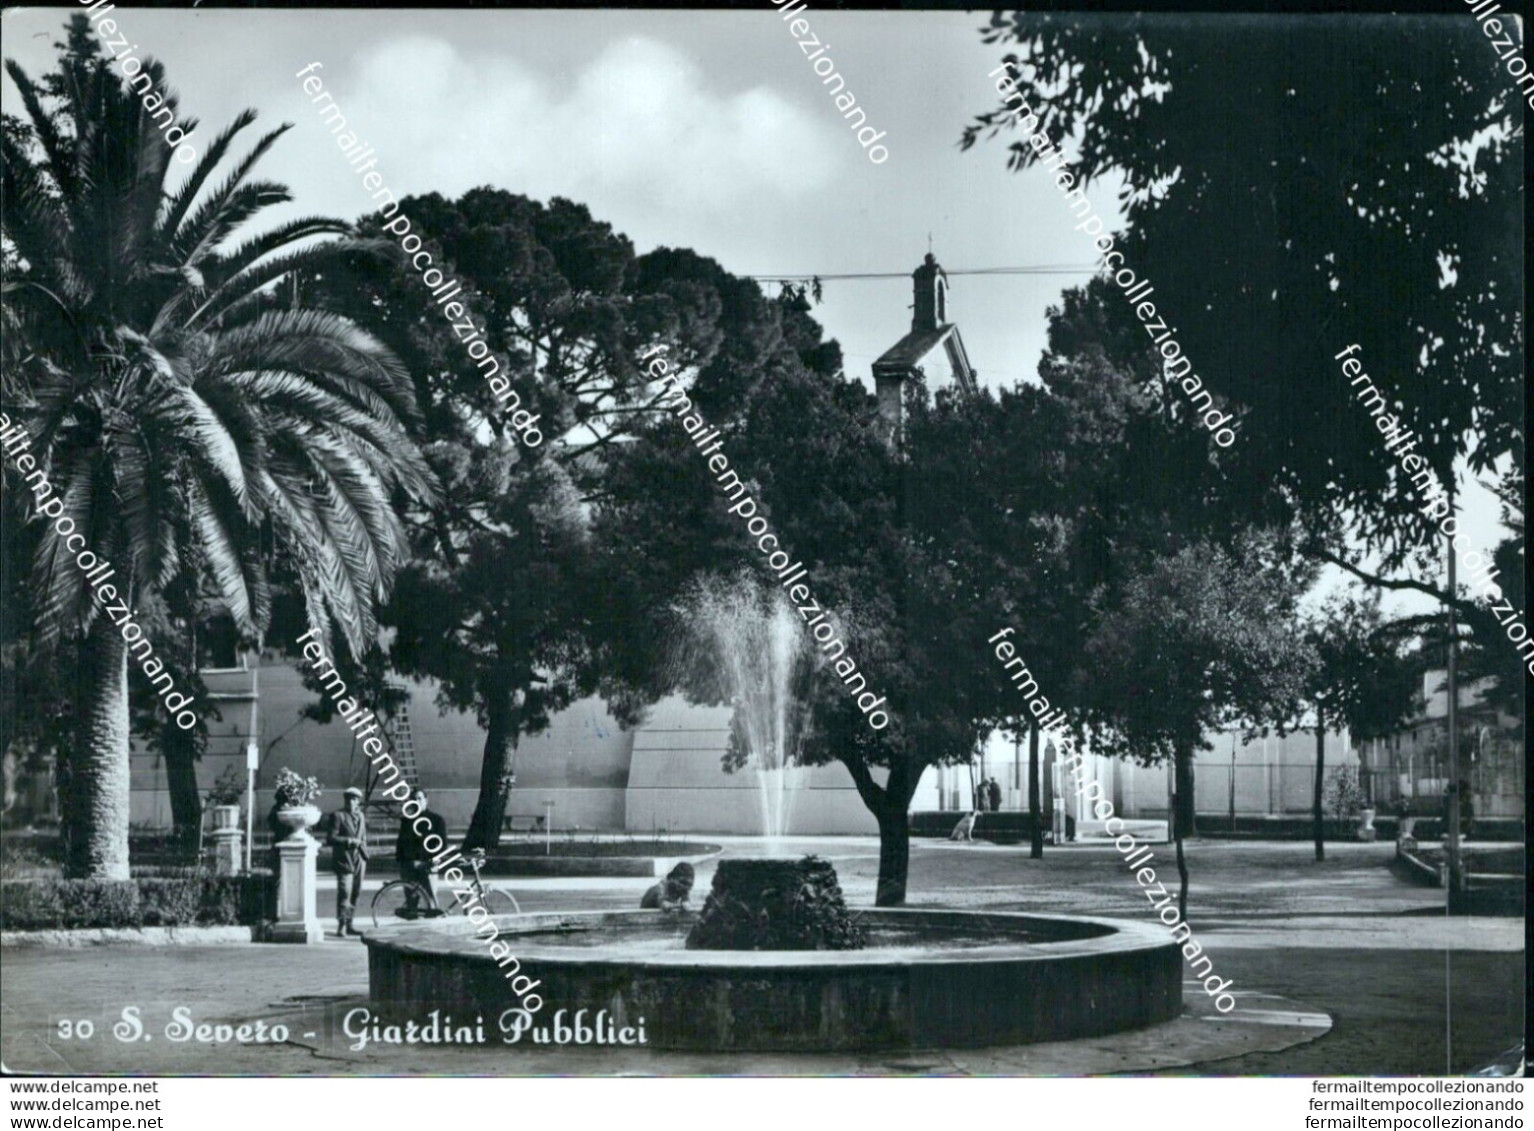 At767 Cartolina S.severo Giardini Pubblici Provincia Di Foggia - Foggia